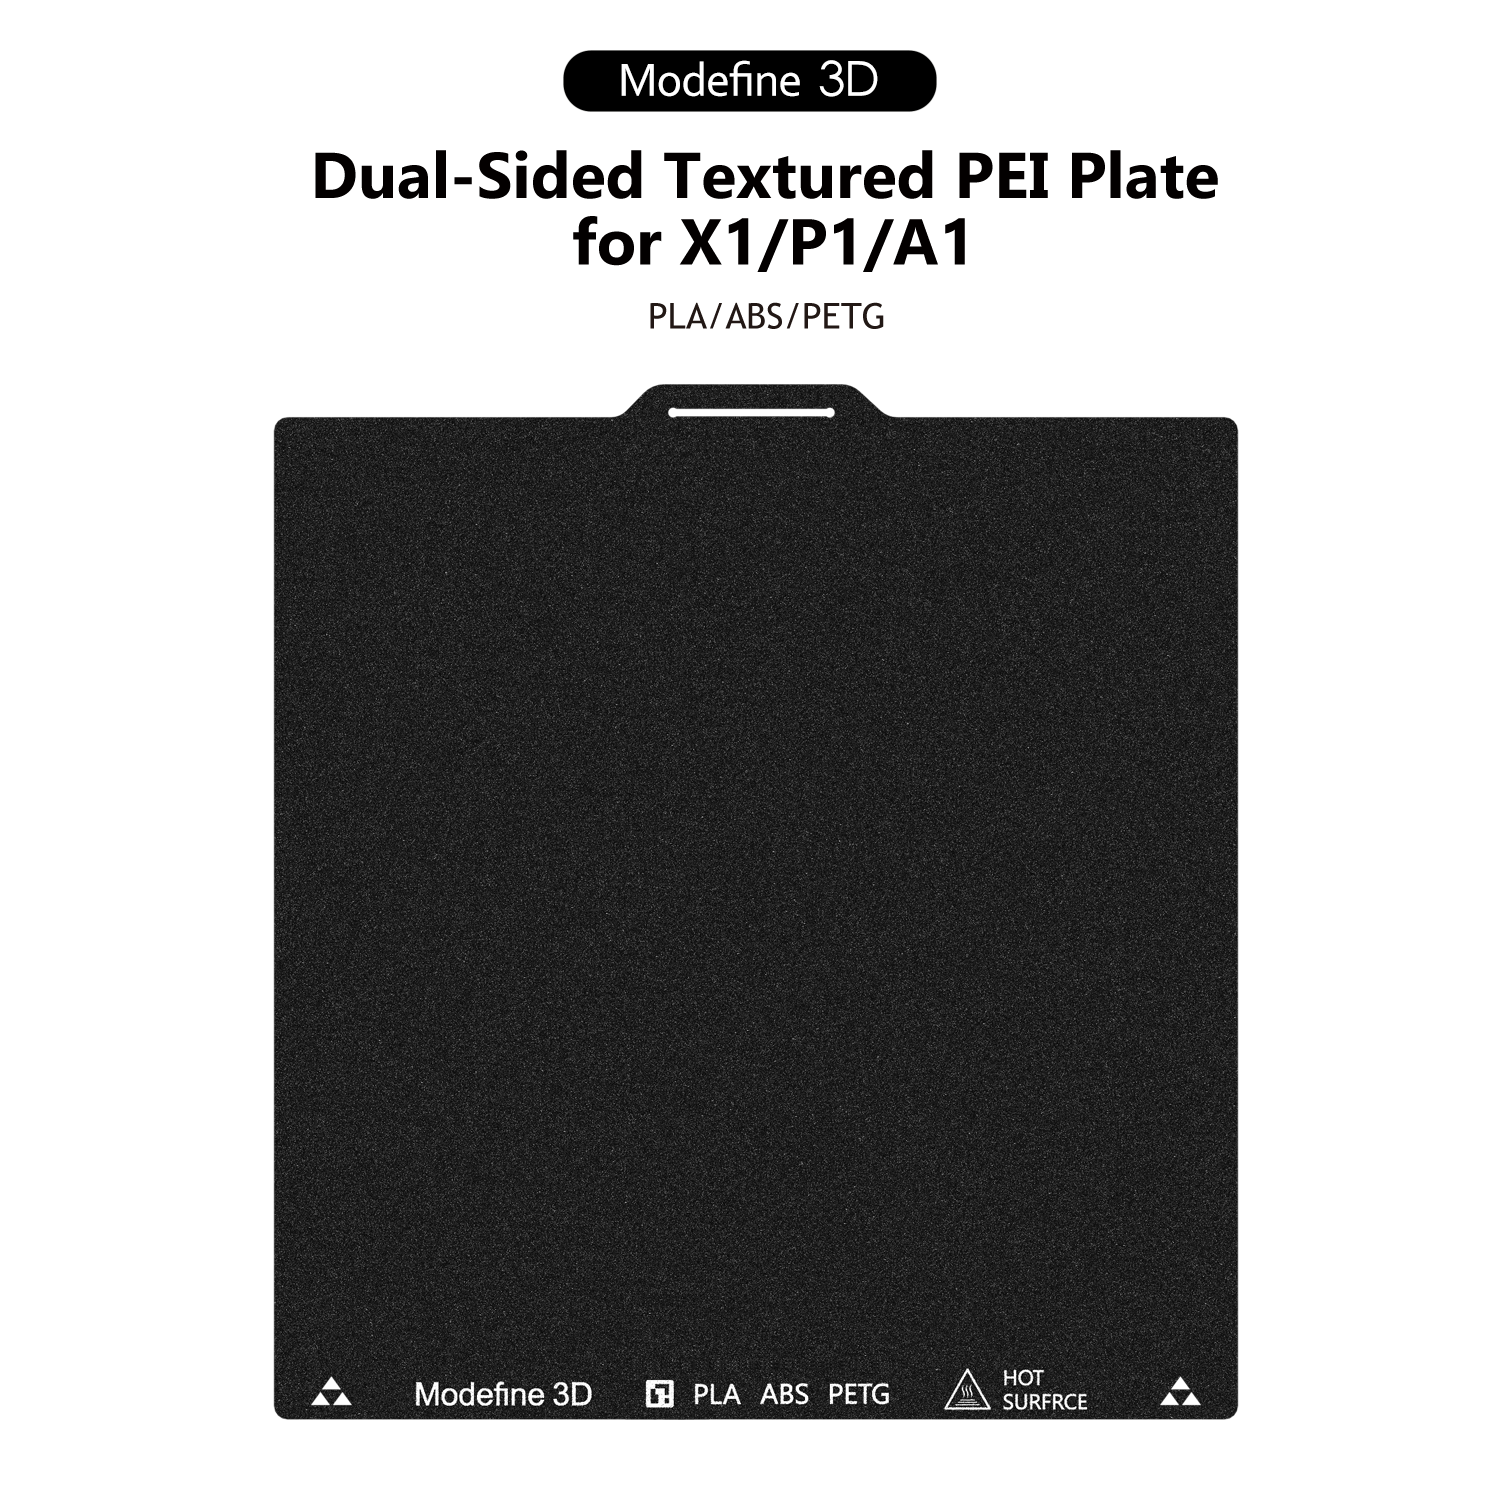 Modefine 3D - Textured PEI plate for Bambu X1/P1/A1